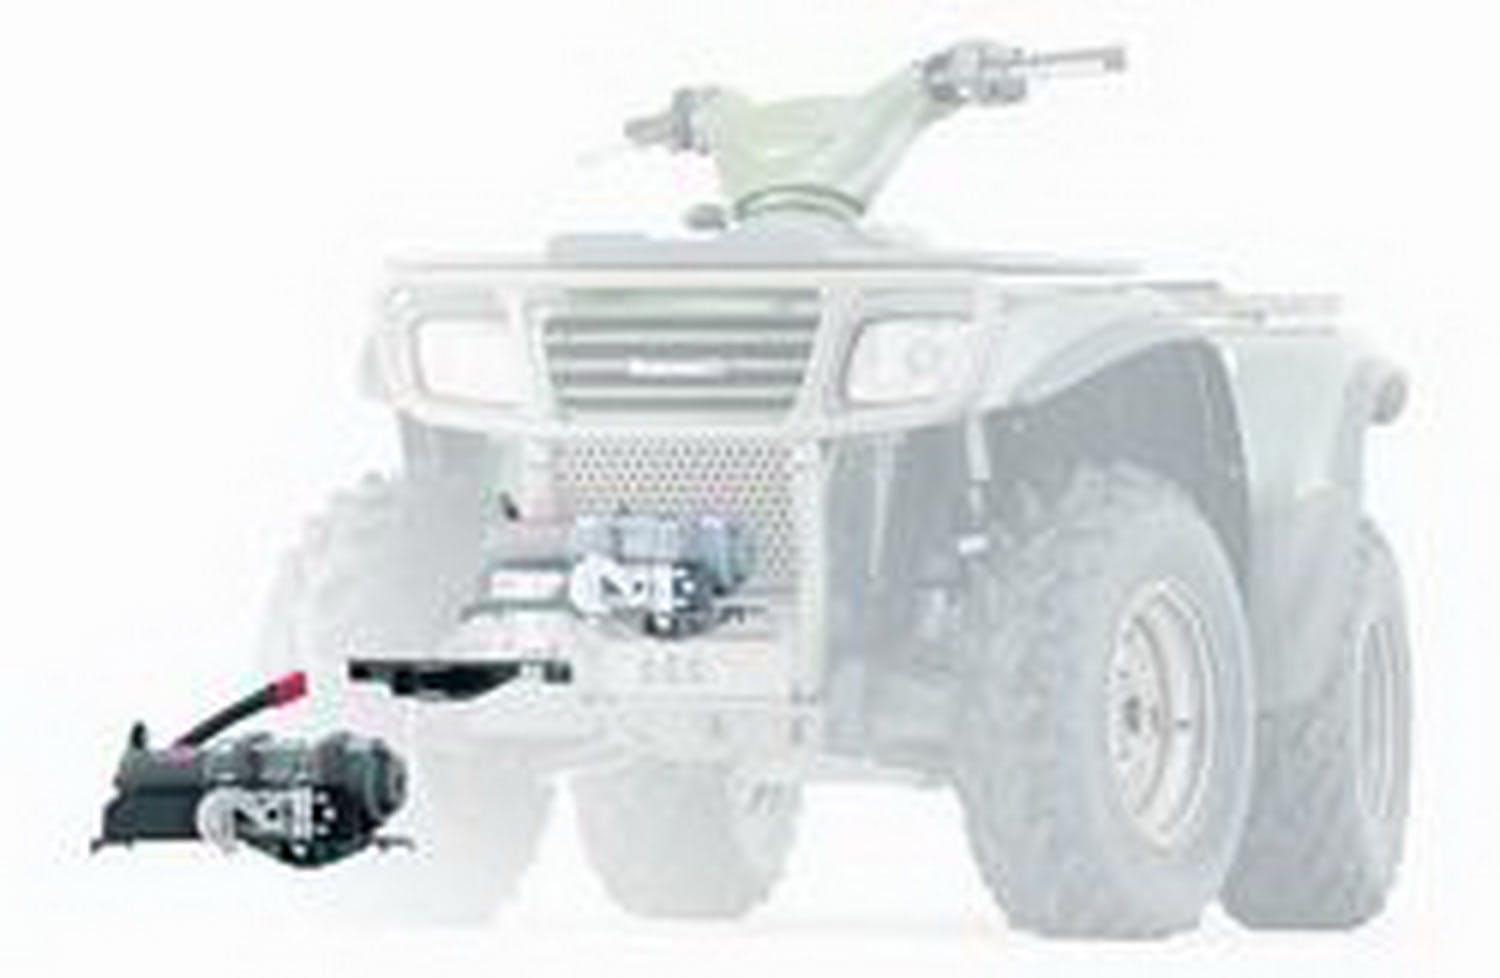 WARN 70326 ATV Winch Mounting System